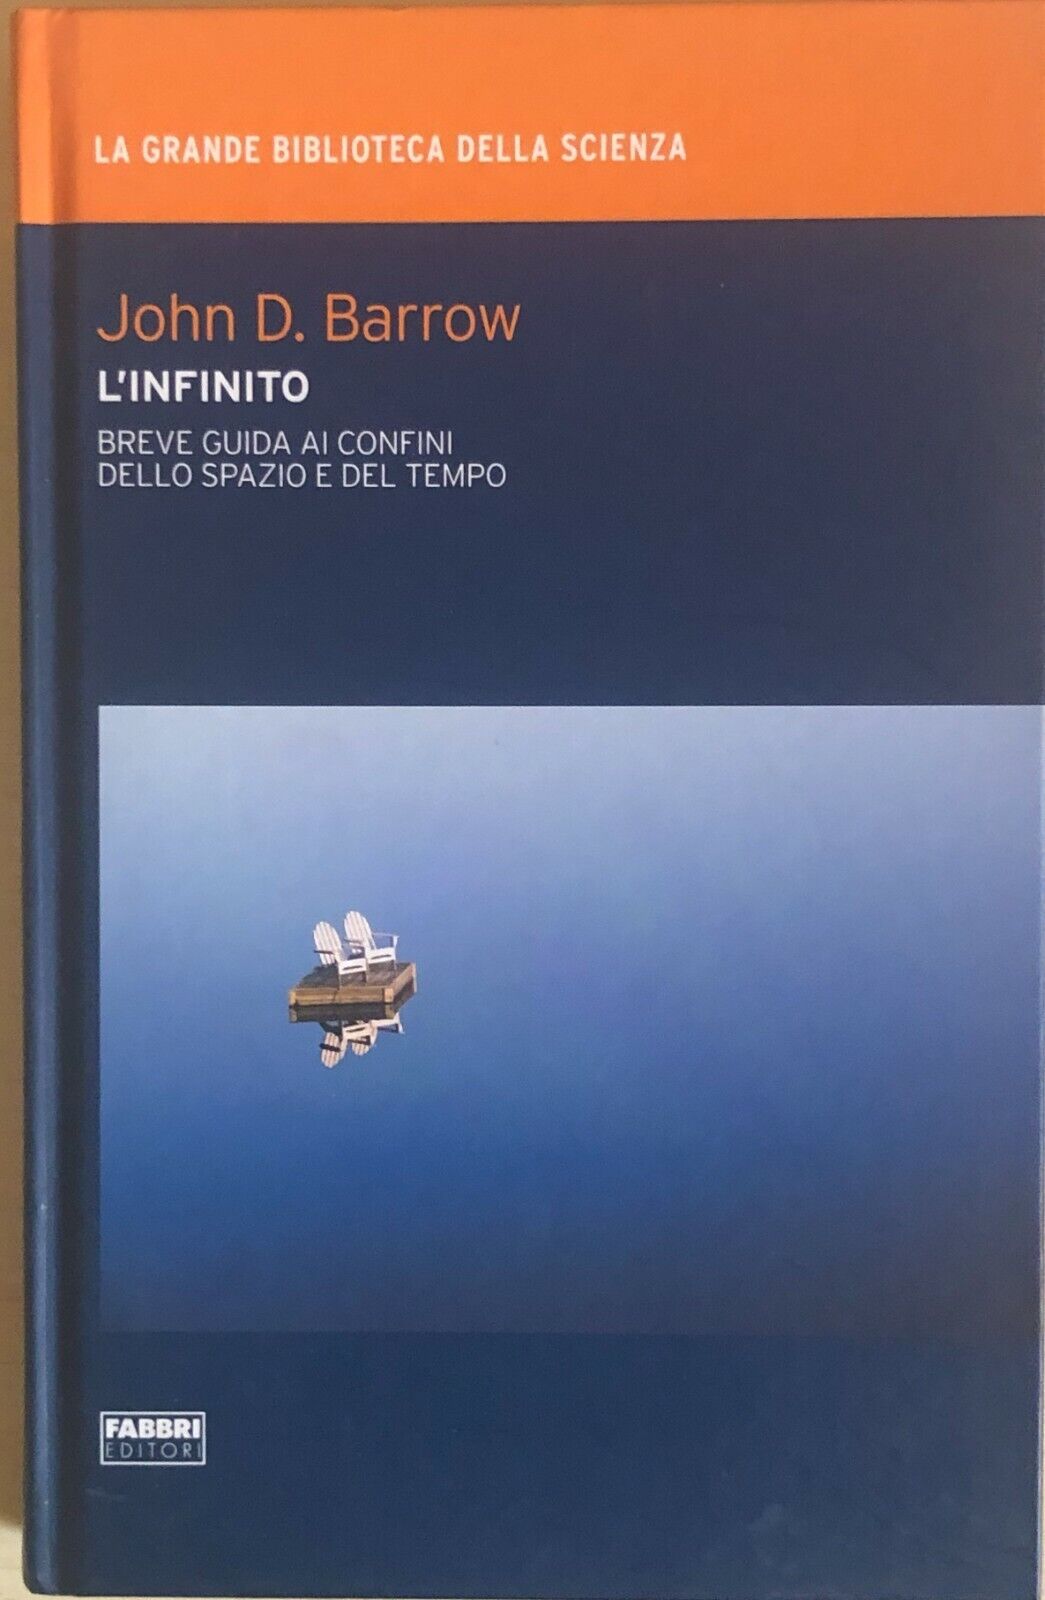 L'infinito di John D. Barrow, 2009, Fabbri editori